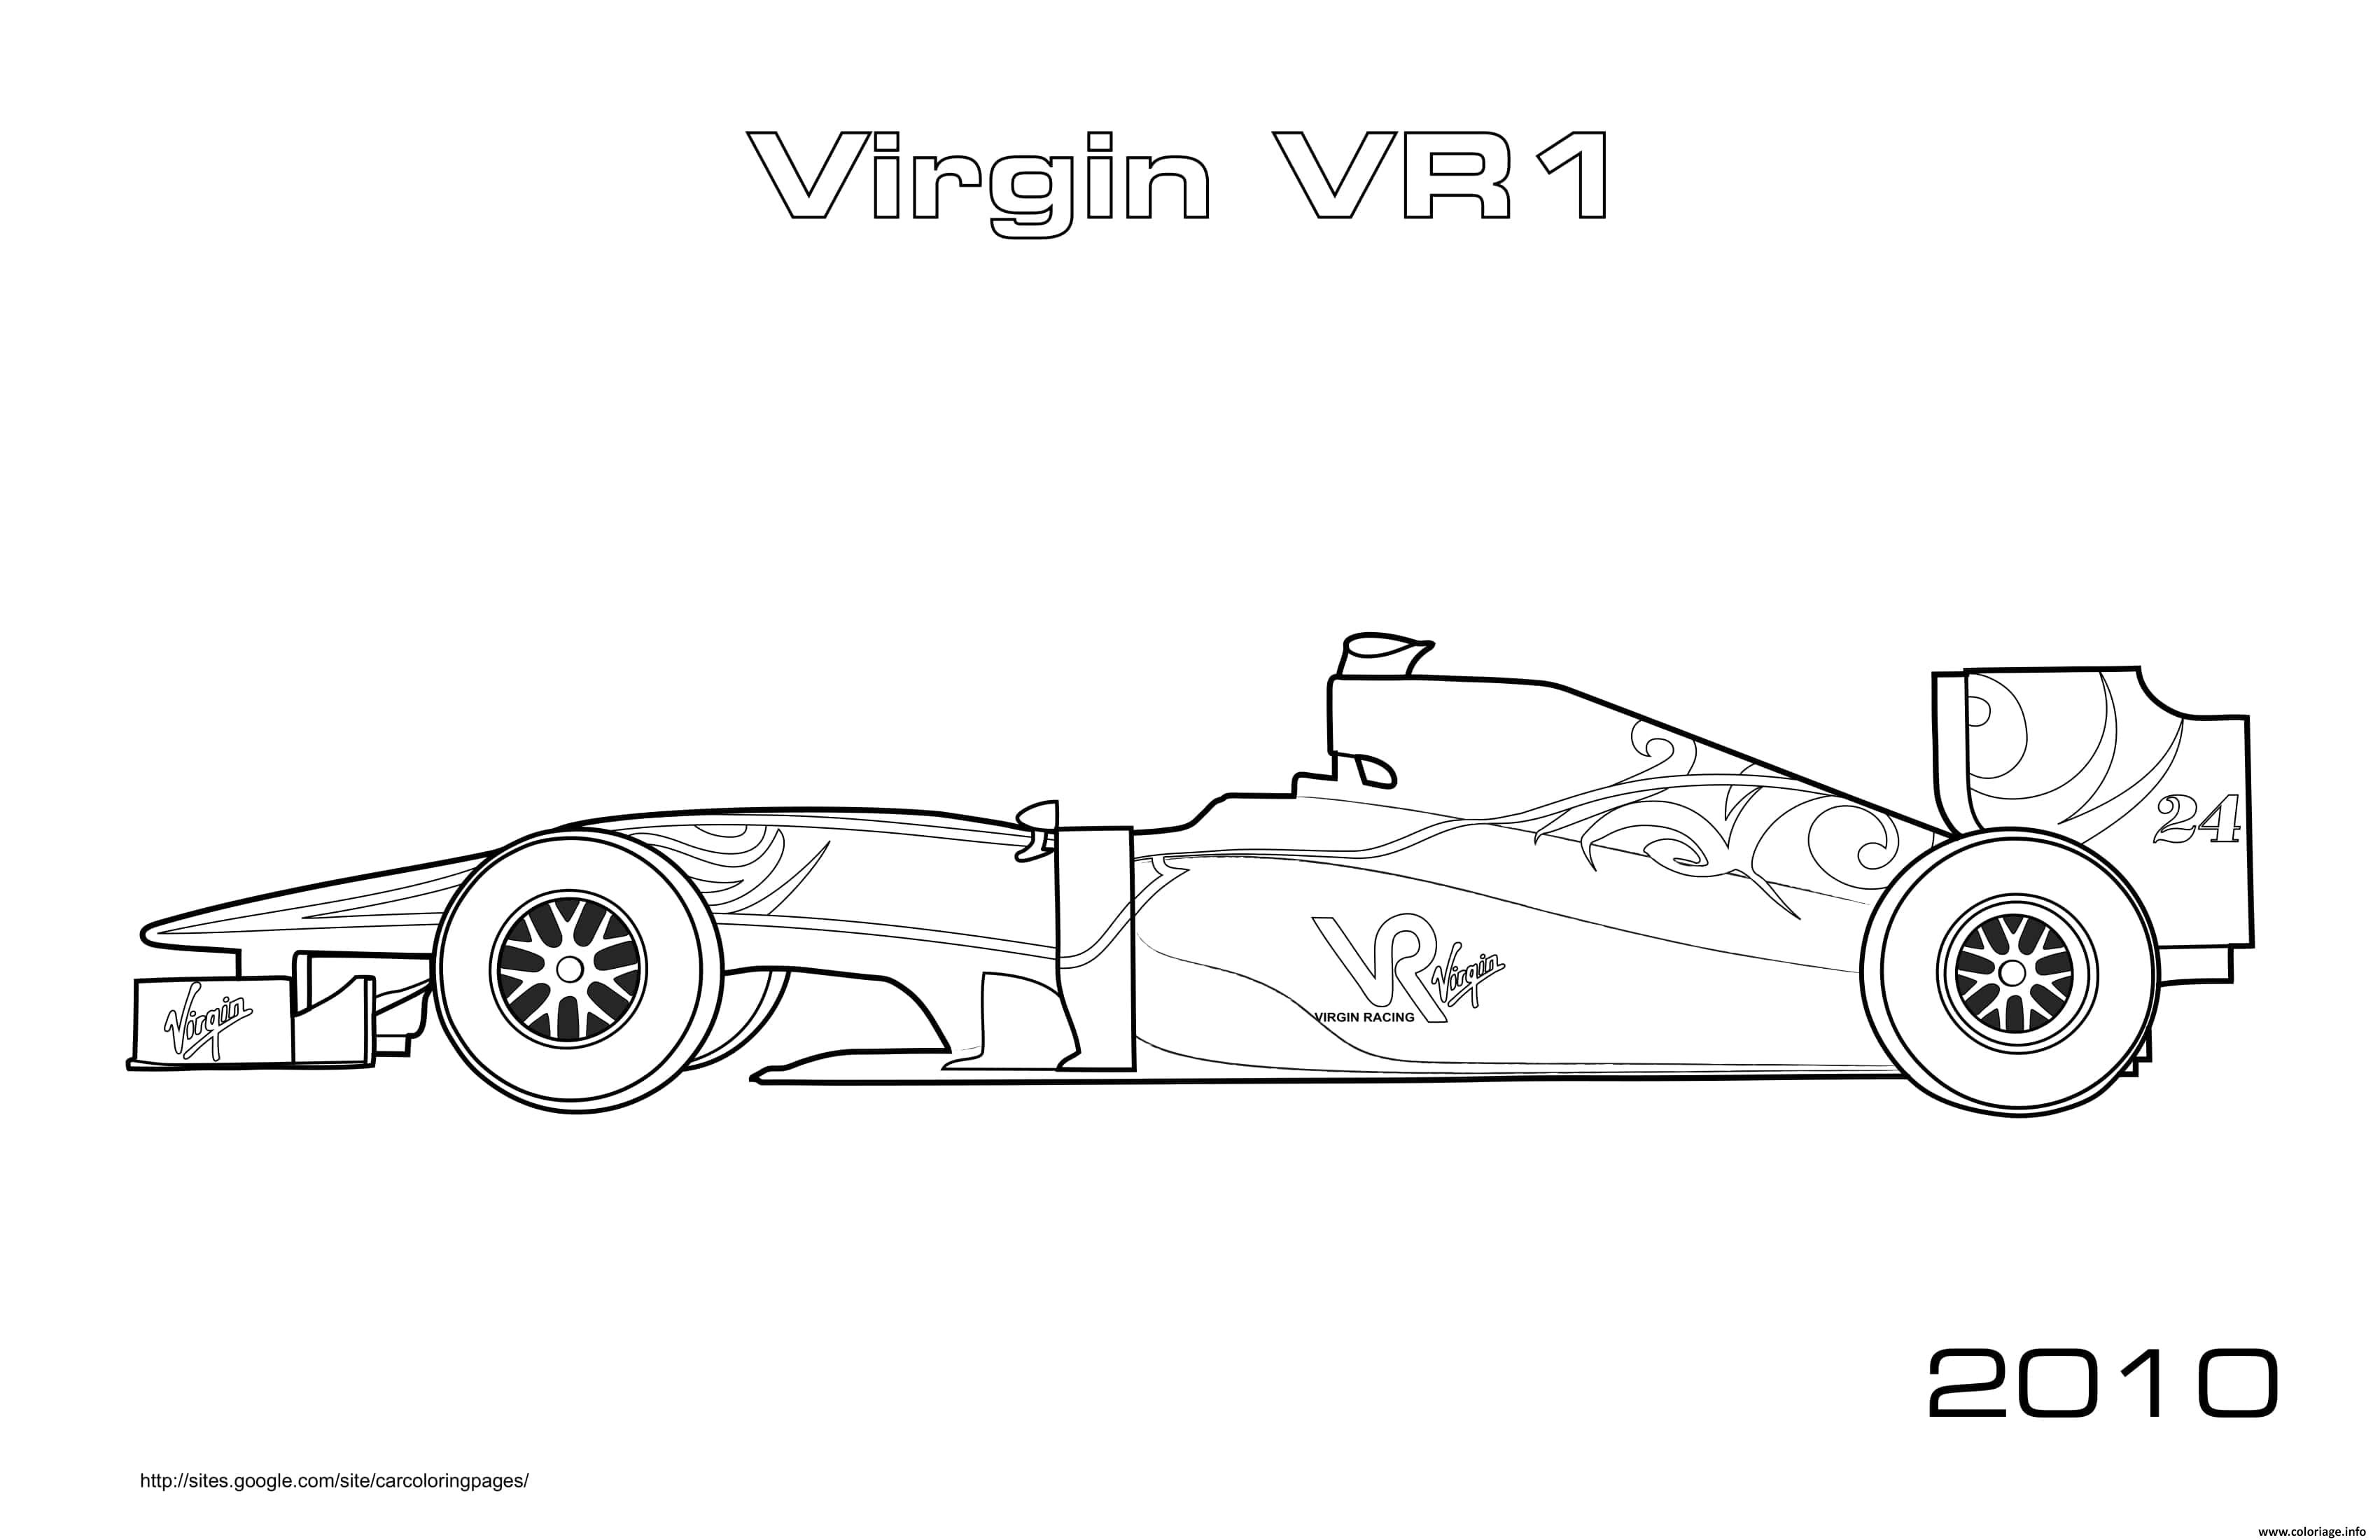 Dessin F1 Virgin Vr1 2010 Coloriage Gratuit à Imprimer